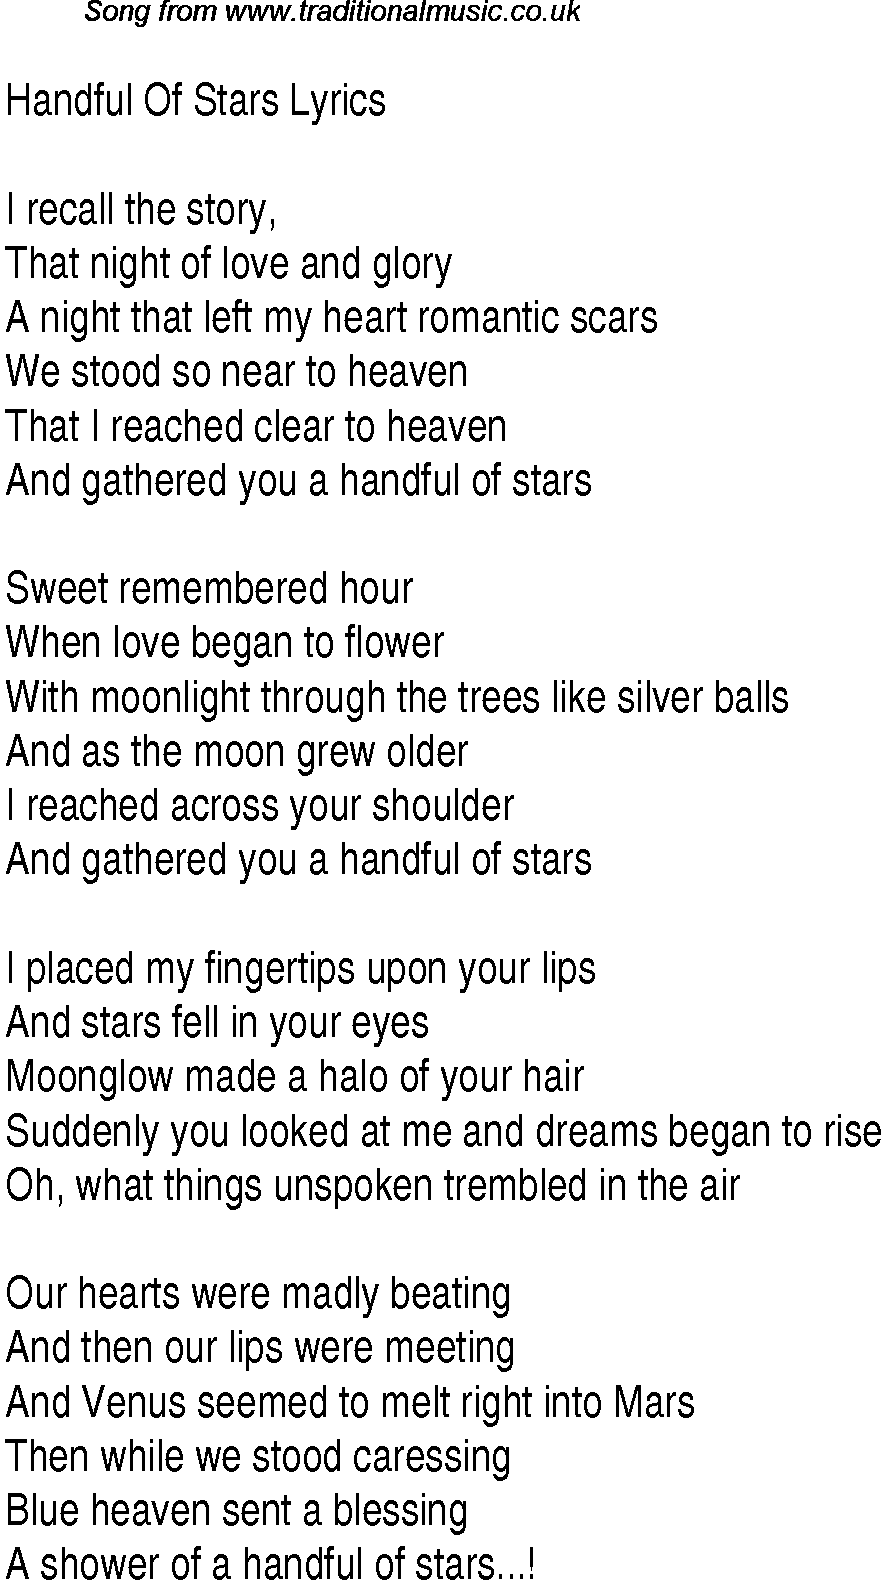 1940s top songs - lyrics for Handful Of Stars(Glen Miller)